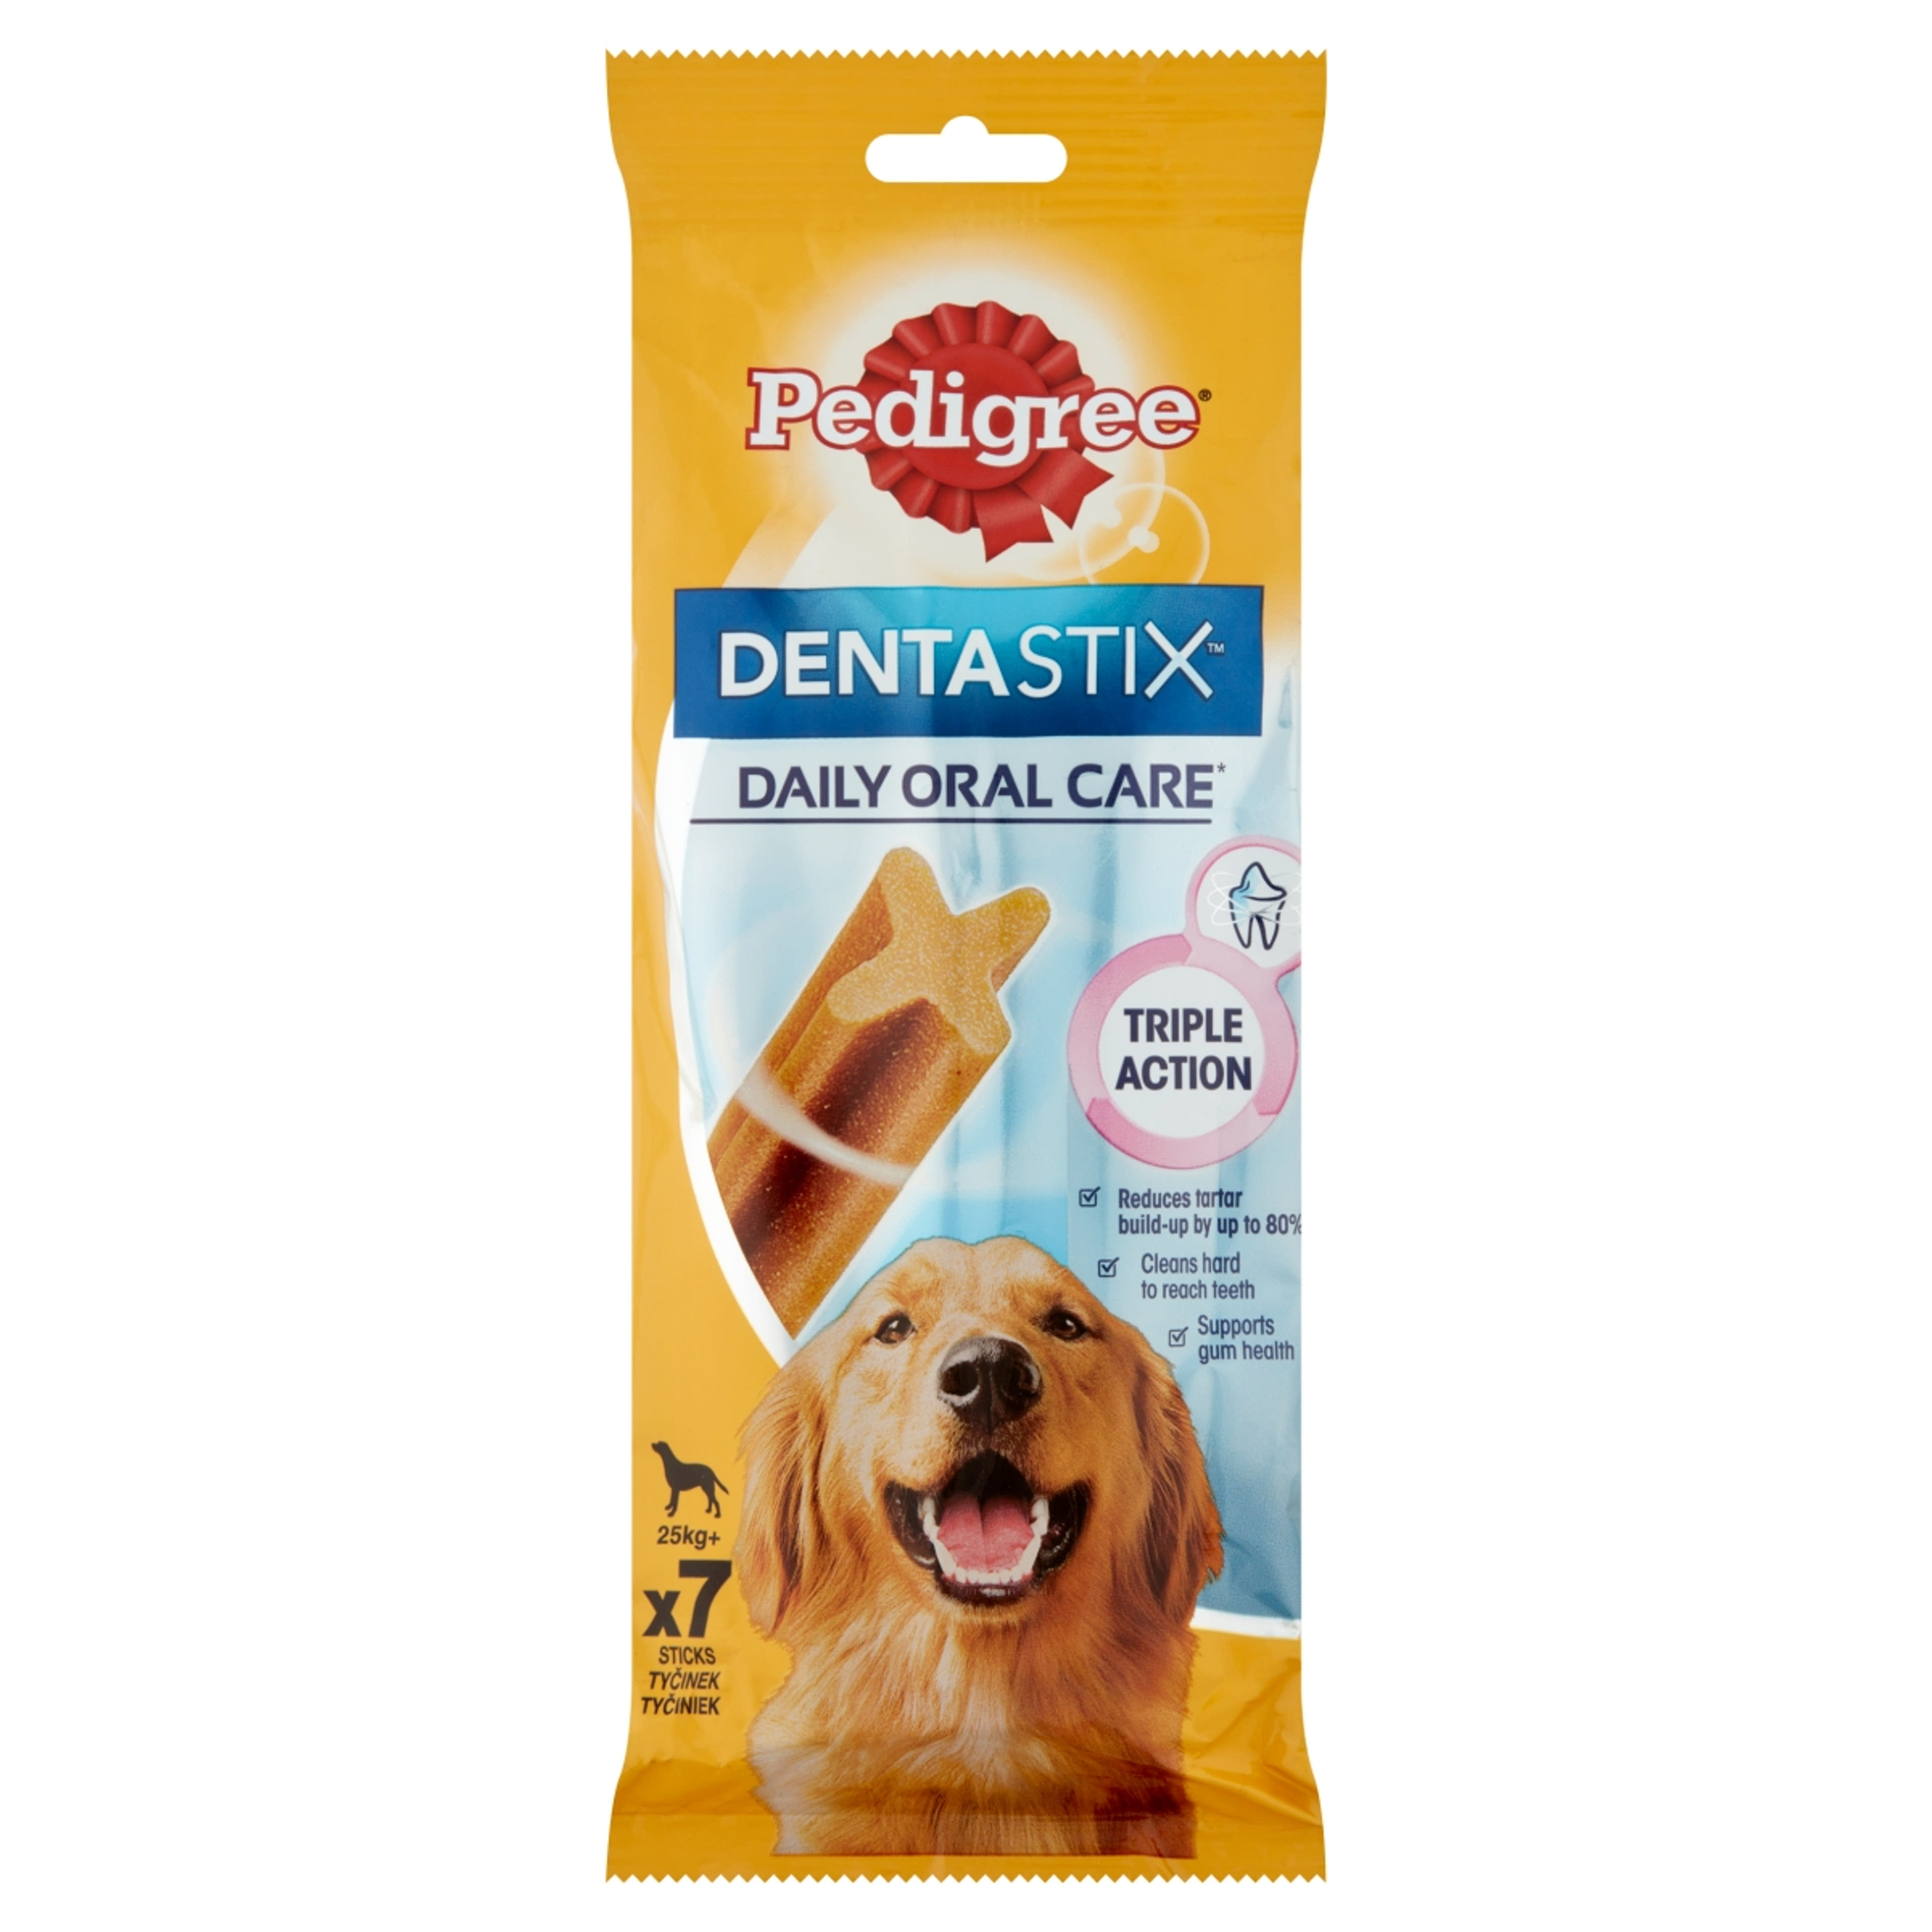 Pedigree DentaStix 4 hónapnál idősebb kiegészítő szárazeledel kutyáknak - 7db-270 g